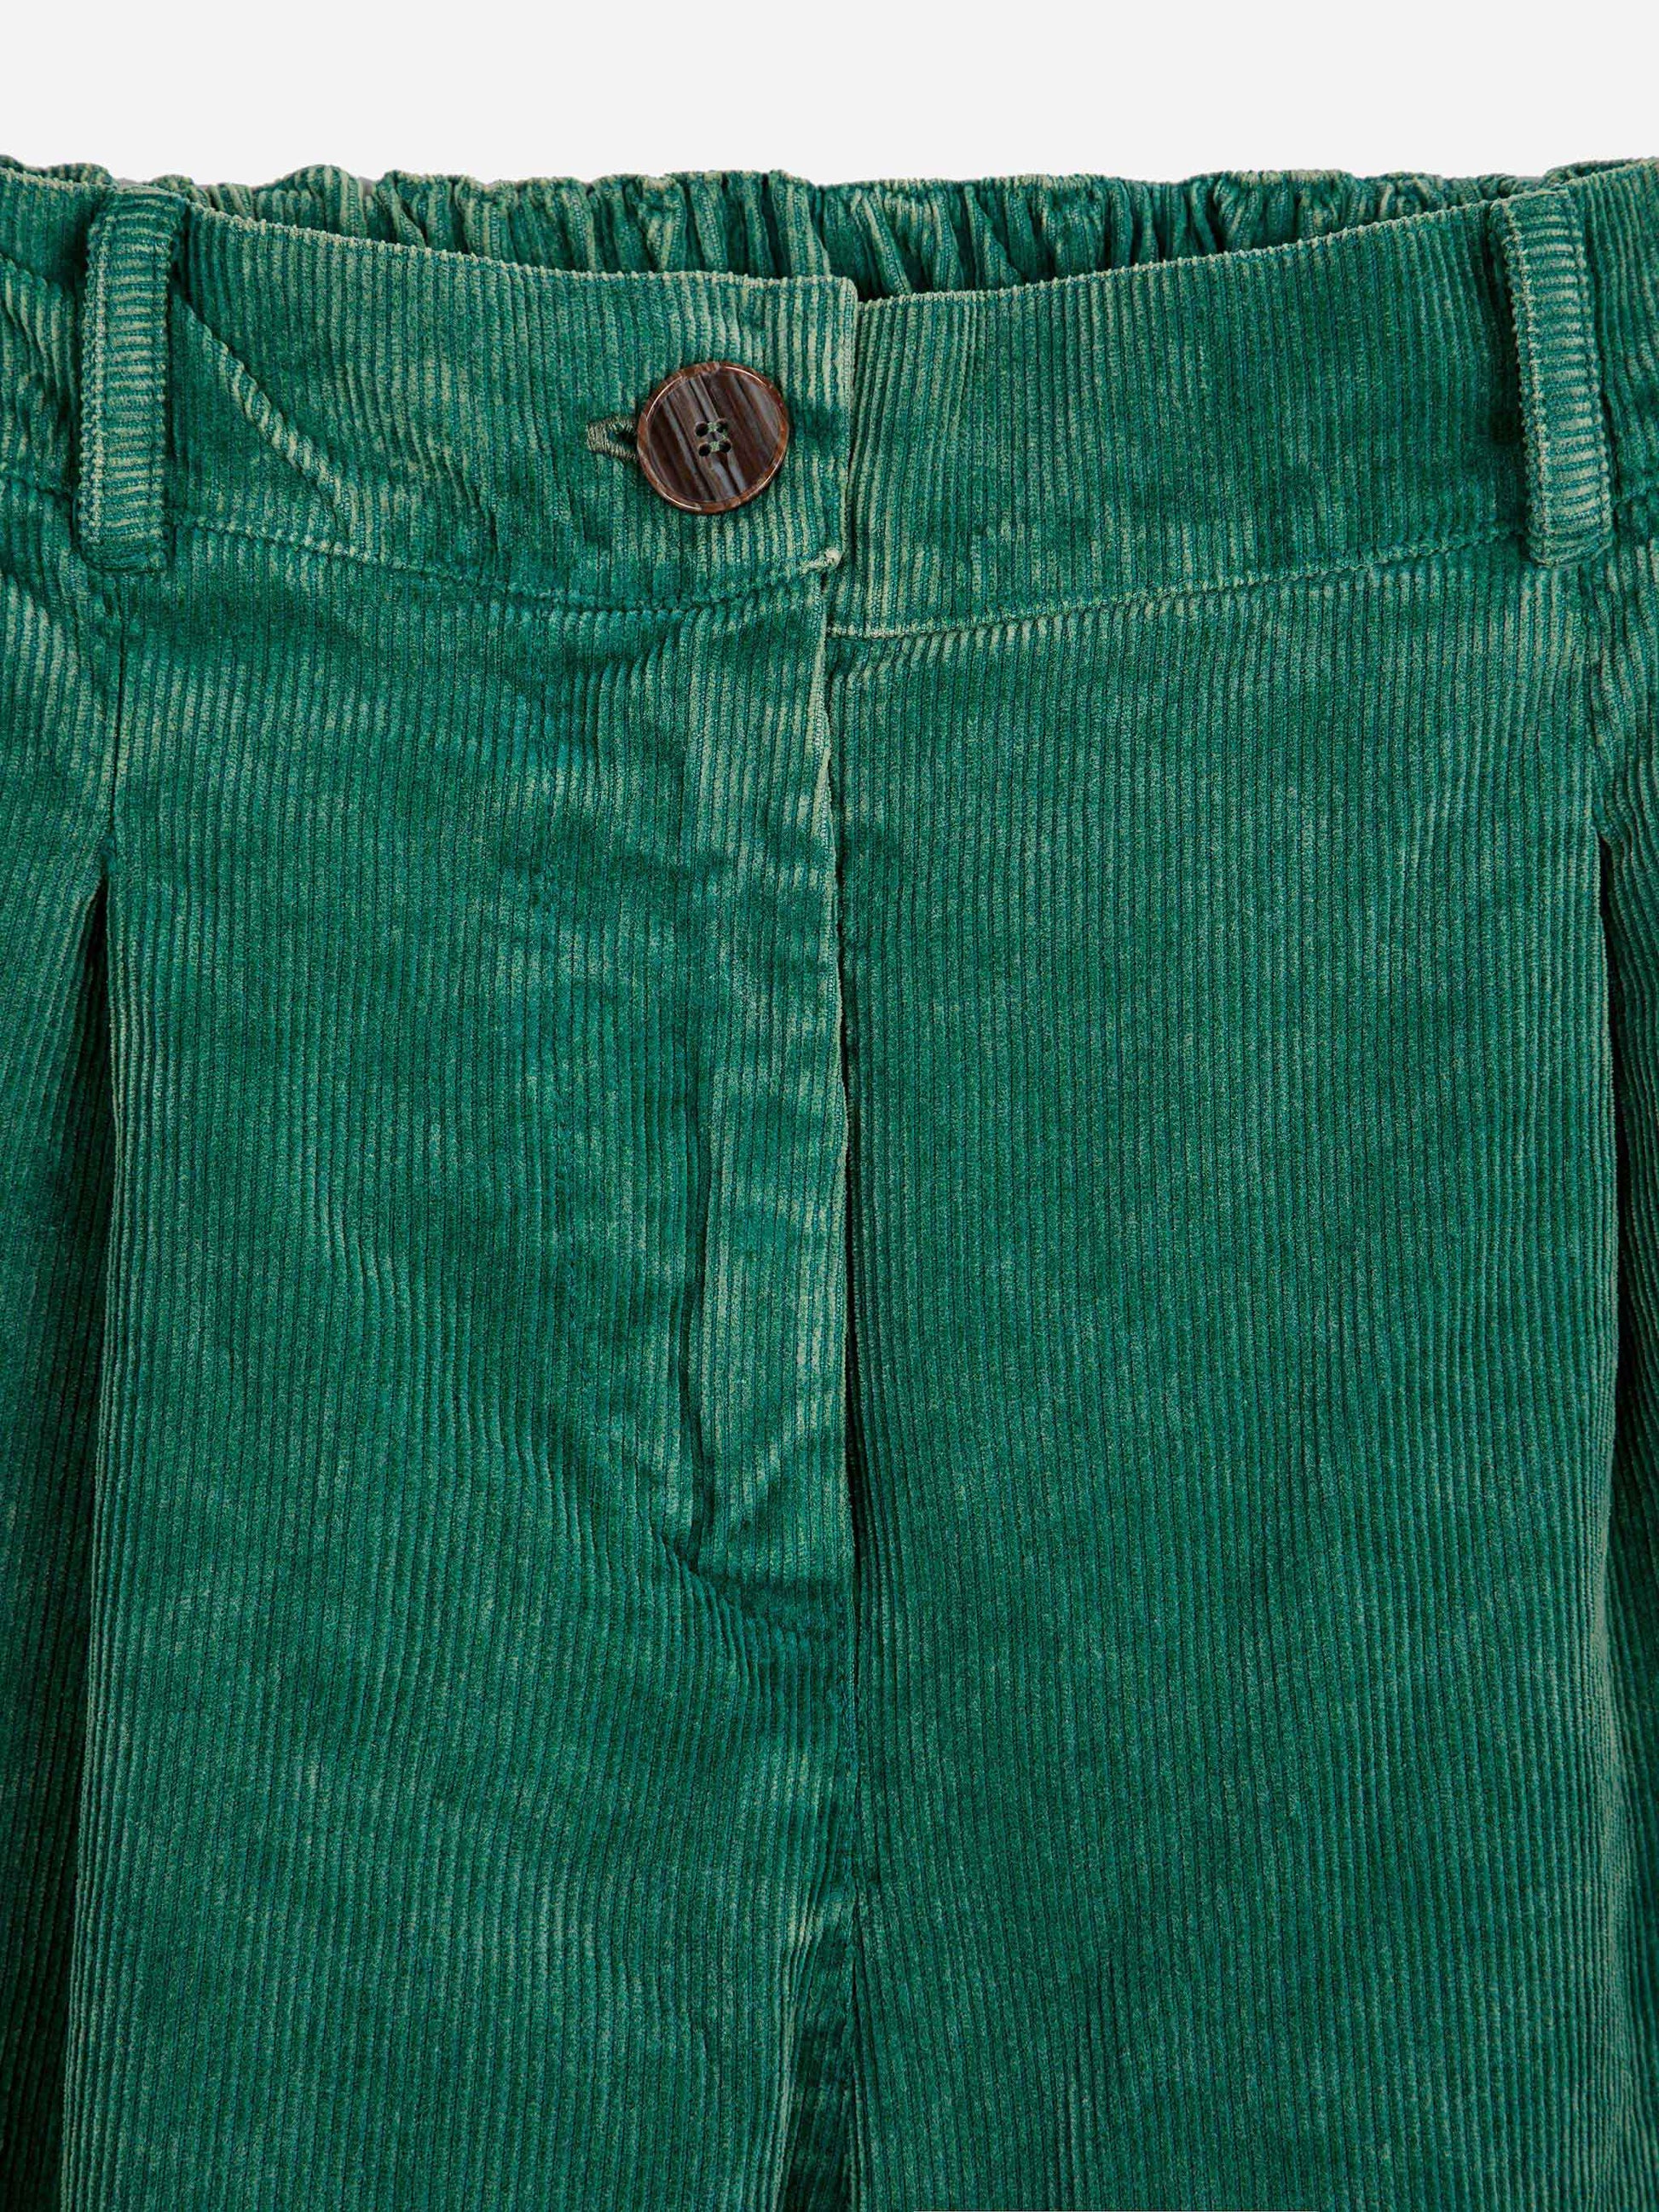 Emerald Pleated County Corduroy Pants